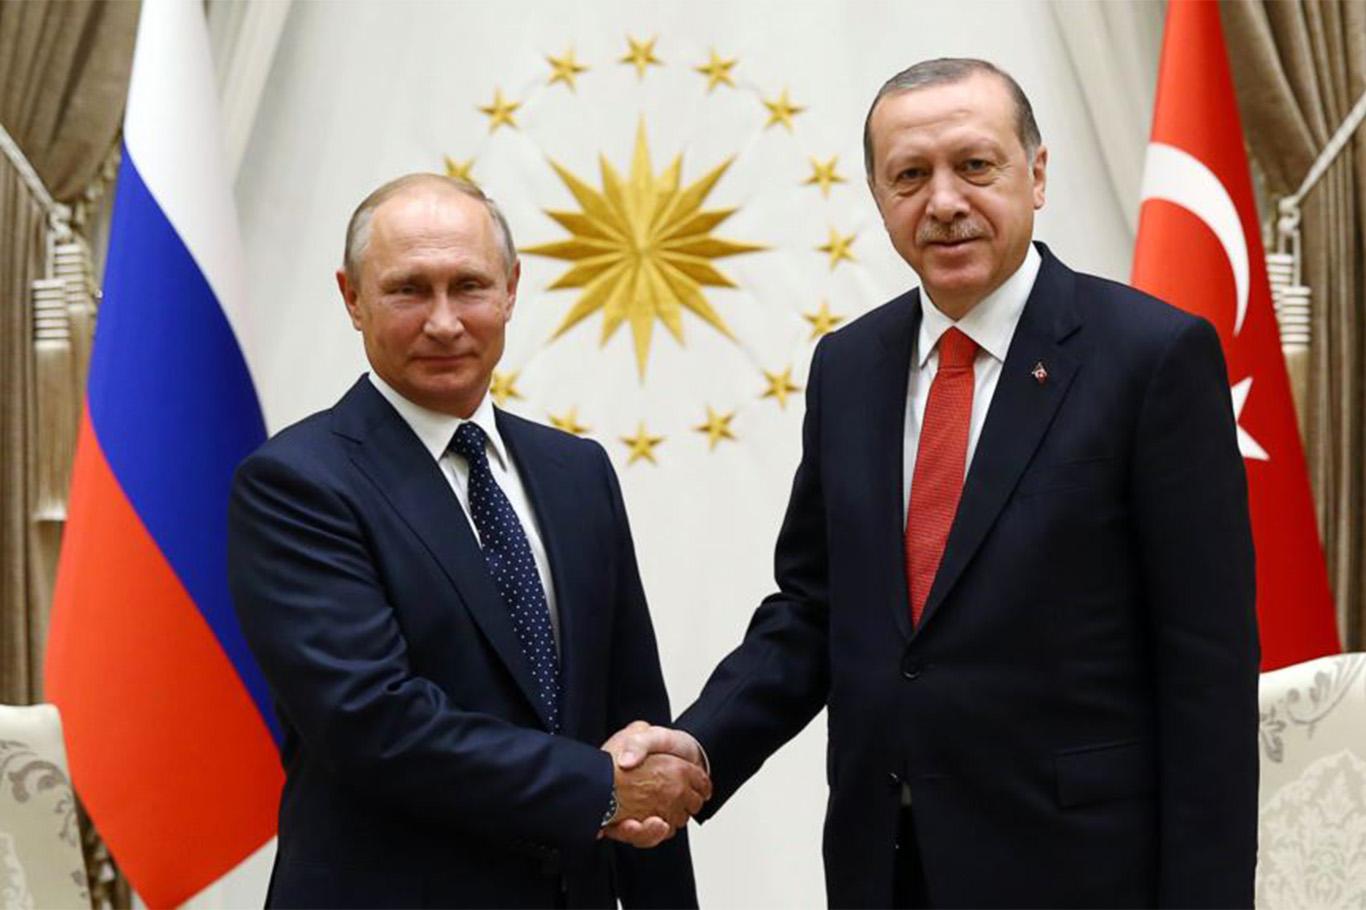 Cumhurbaşkanı Erdoğan Putin'le telefonda görüştü